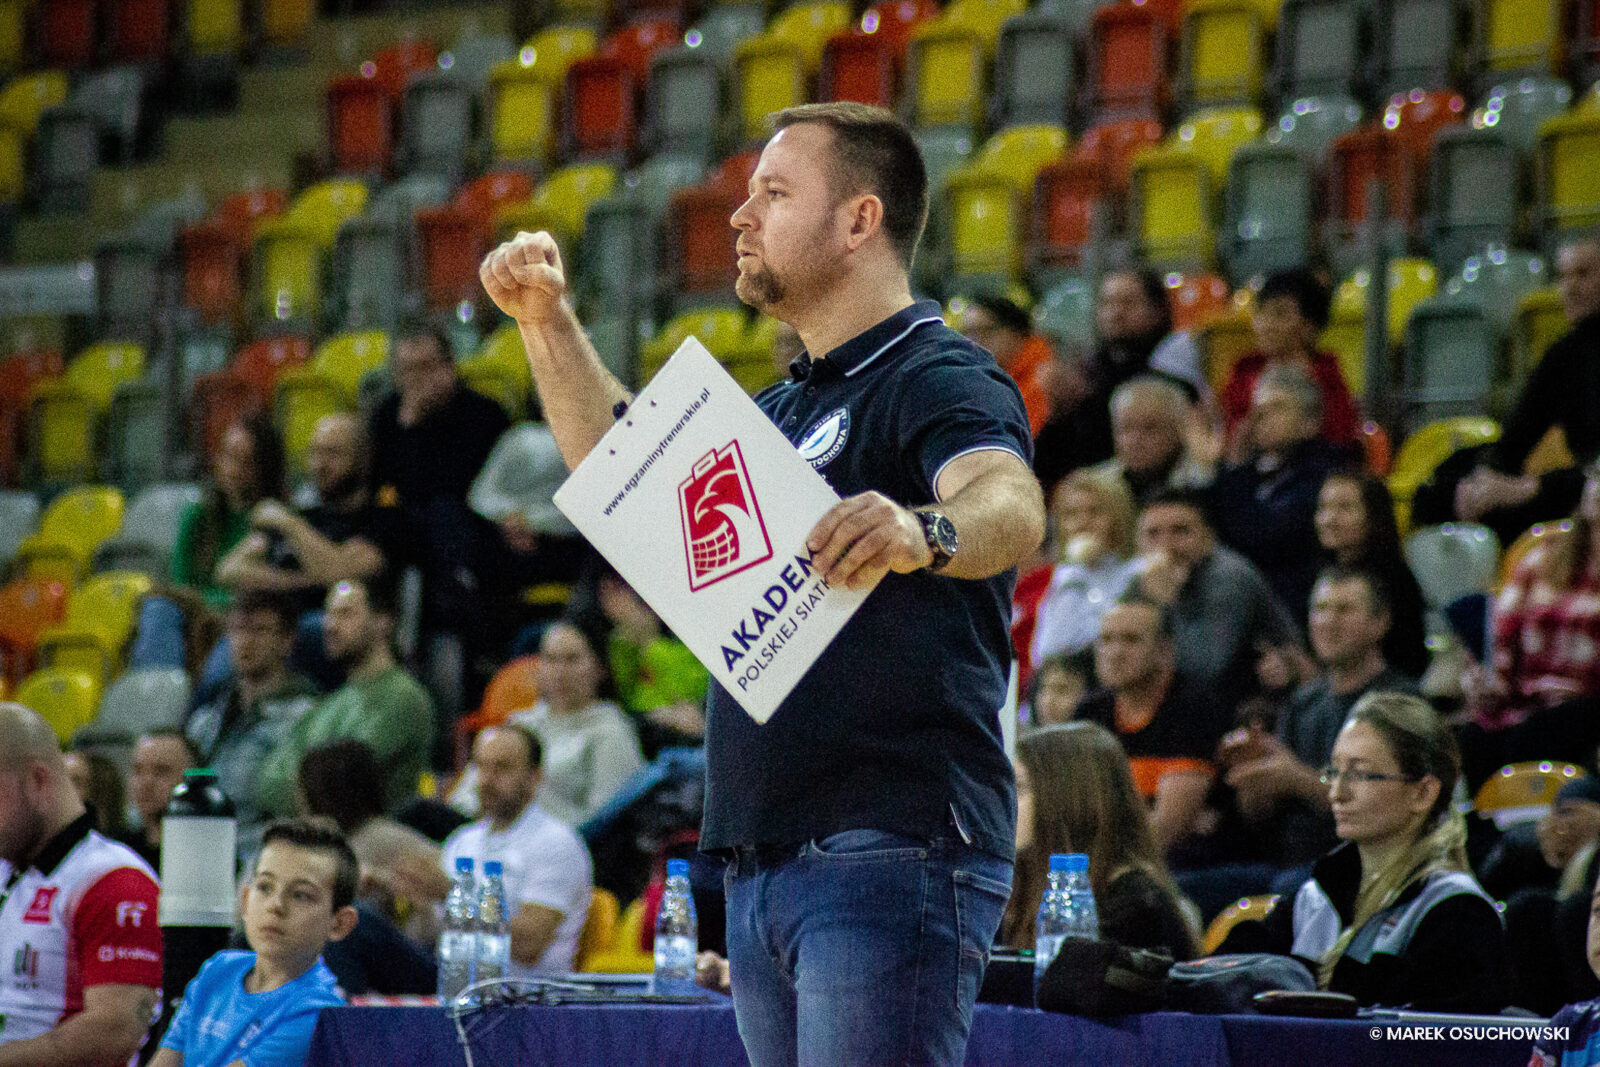 Trener Exact Systems Norwid Leszek Hudziak: Kraków stawiał bardzo mocny opór 10